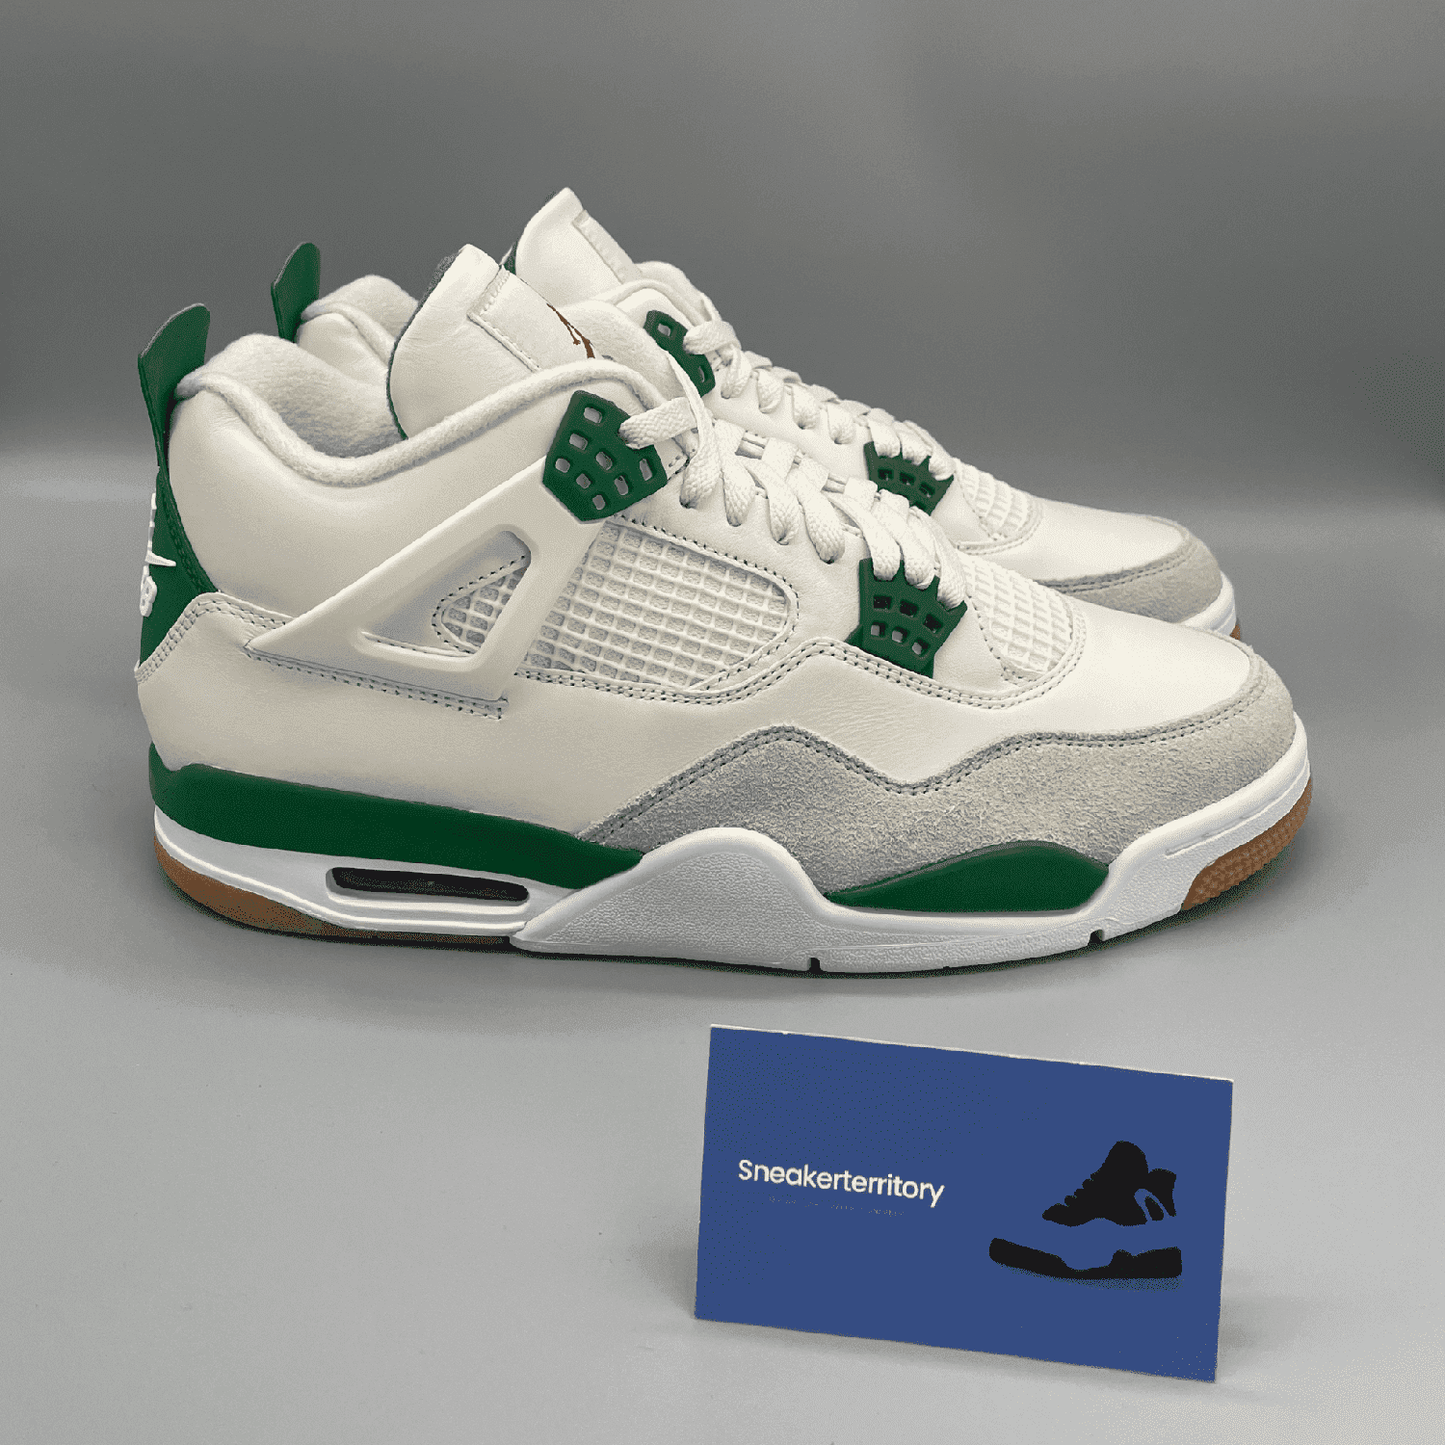 Air Jordan 4 SB Pine Green - Sneakerterritory; Sneaker Territory